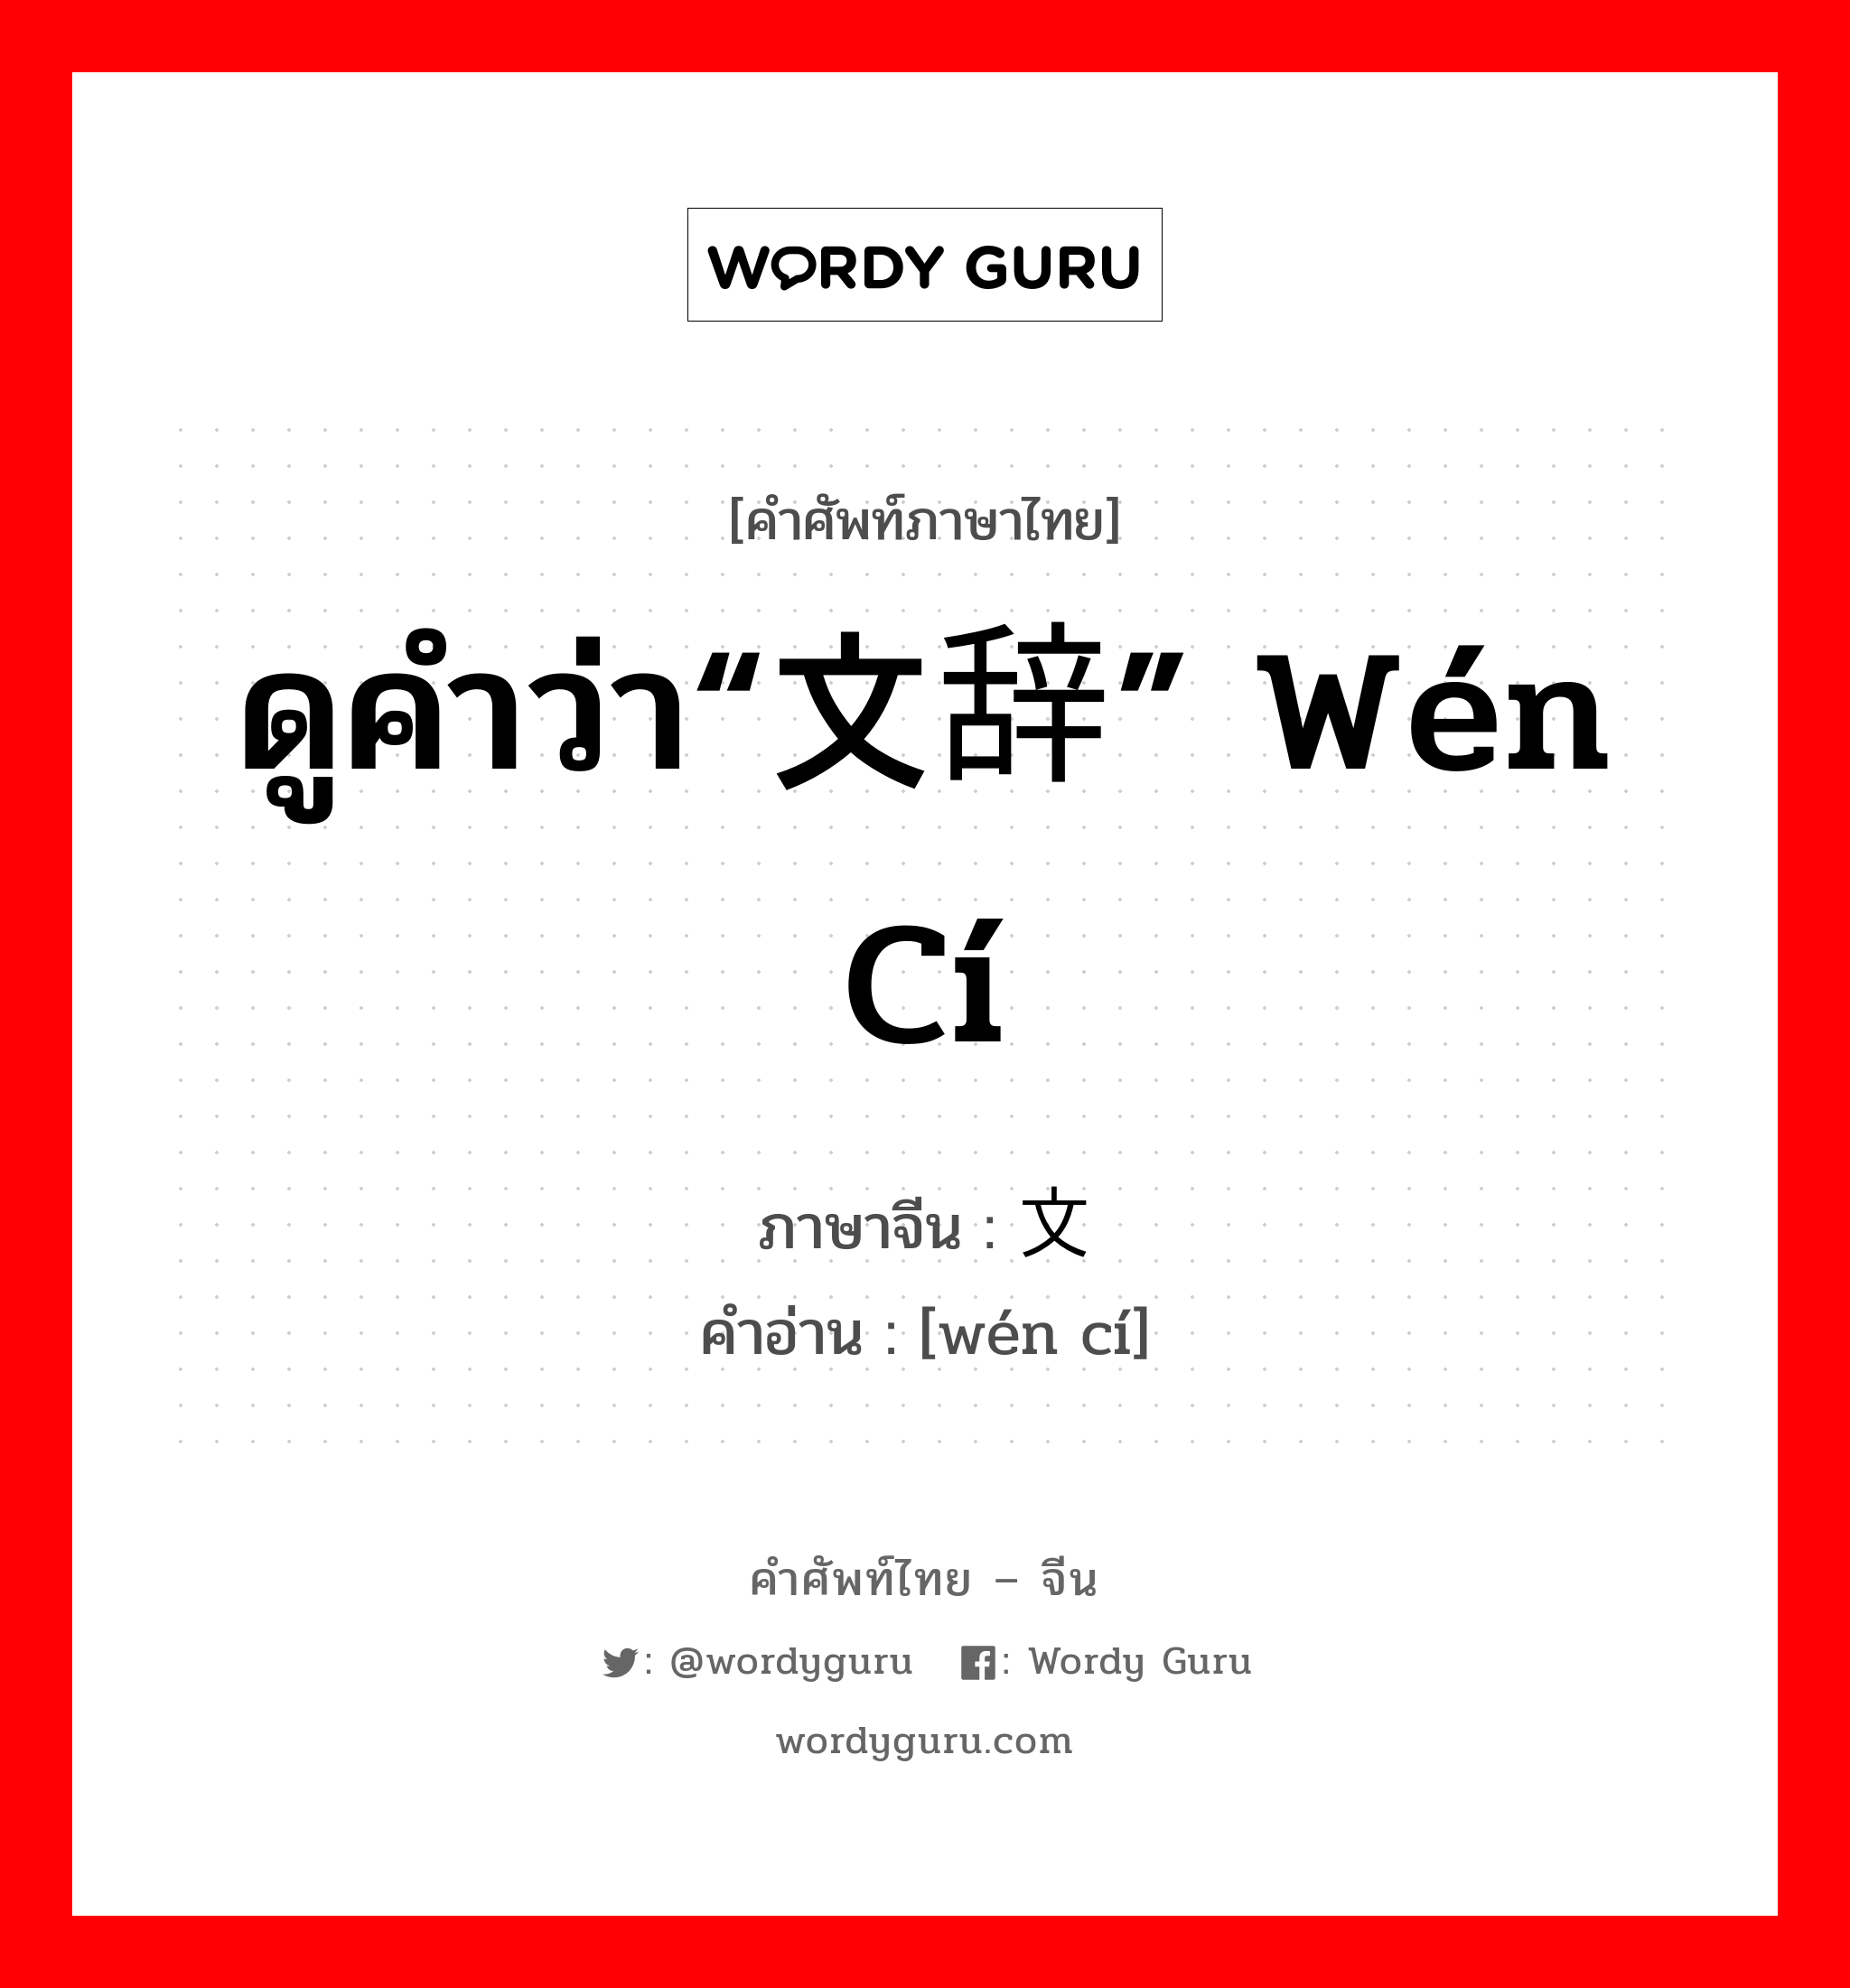 ดูคำว่า“文辞” wén cí ภาษาจีนคืออะไร, คำศัพท์ภาษาไทย - จีน ดูคำว่า“文辞” wén cí ภาษาจีน 文词 คำอ่าน [wén cí]